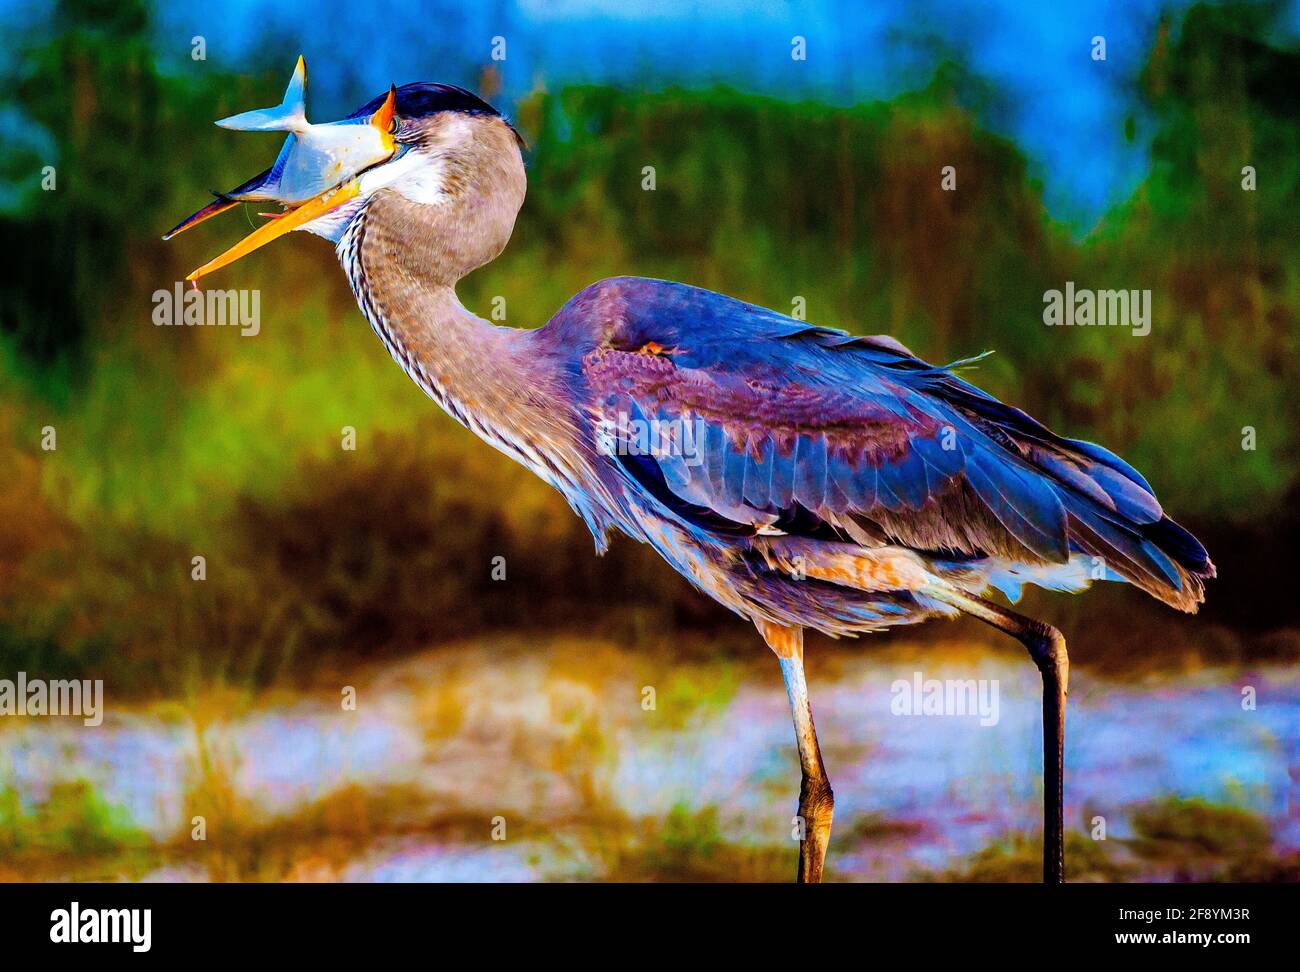 Great Blue Heron (Ardea herodias) gulping a fish, Florida, USA Stock Photo